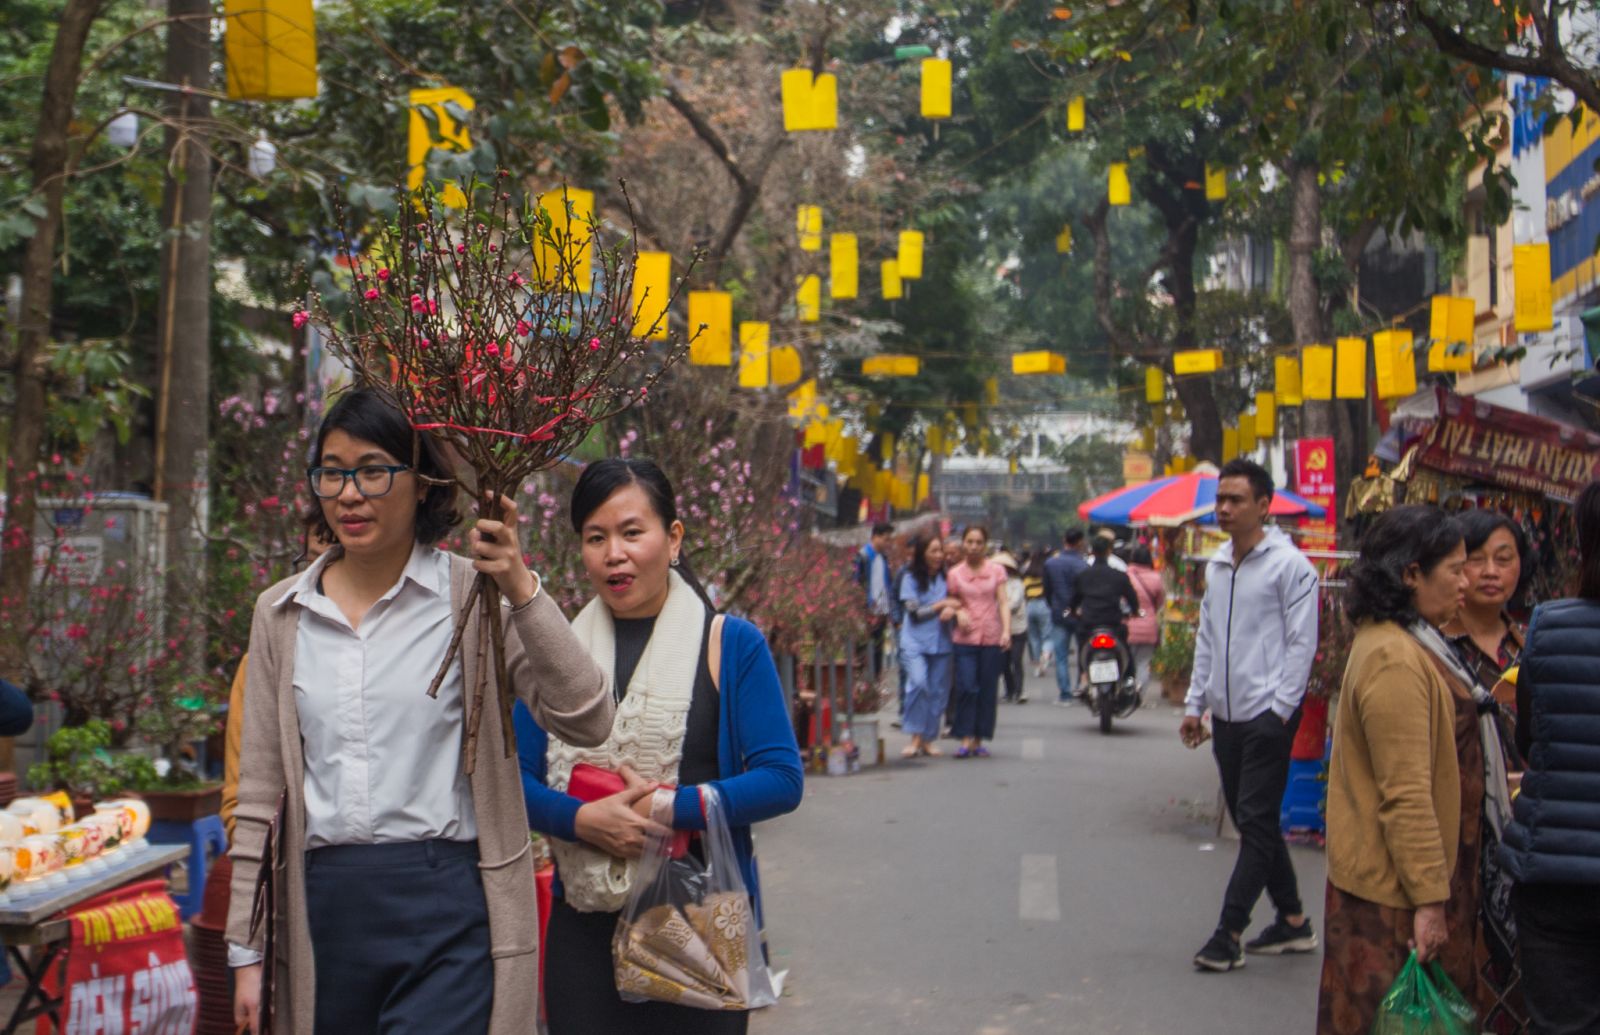 Như một nét truyền thống lâu năm, những ngày cận Tết dù có bận rộn nhưng người Hà Nội vẫn dành thời gian để đến đây mua, ngắm hoa